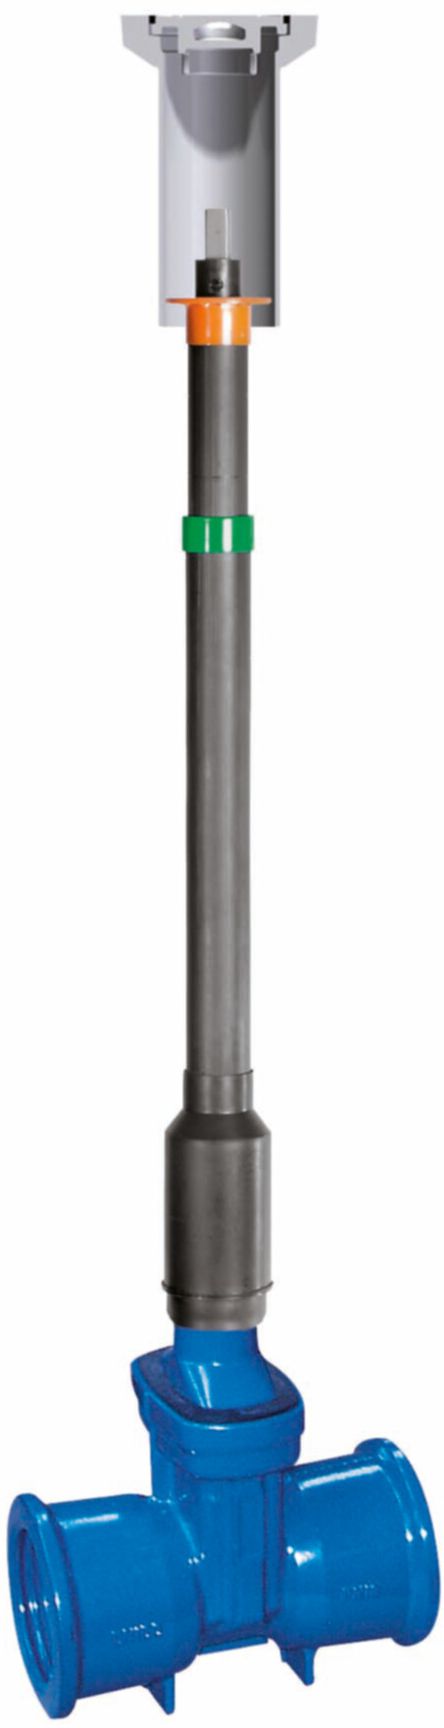 Teleskop-Einbaugarnitur Fig. 6895 L3 DN 125 GT 1.57- 2.29 m - Von Roll Armaturen